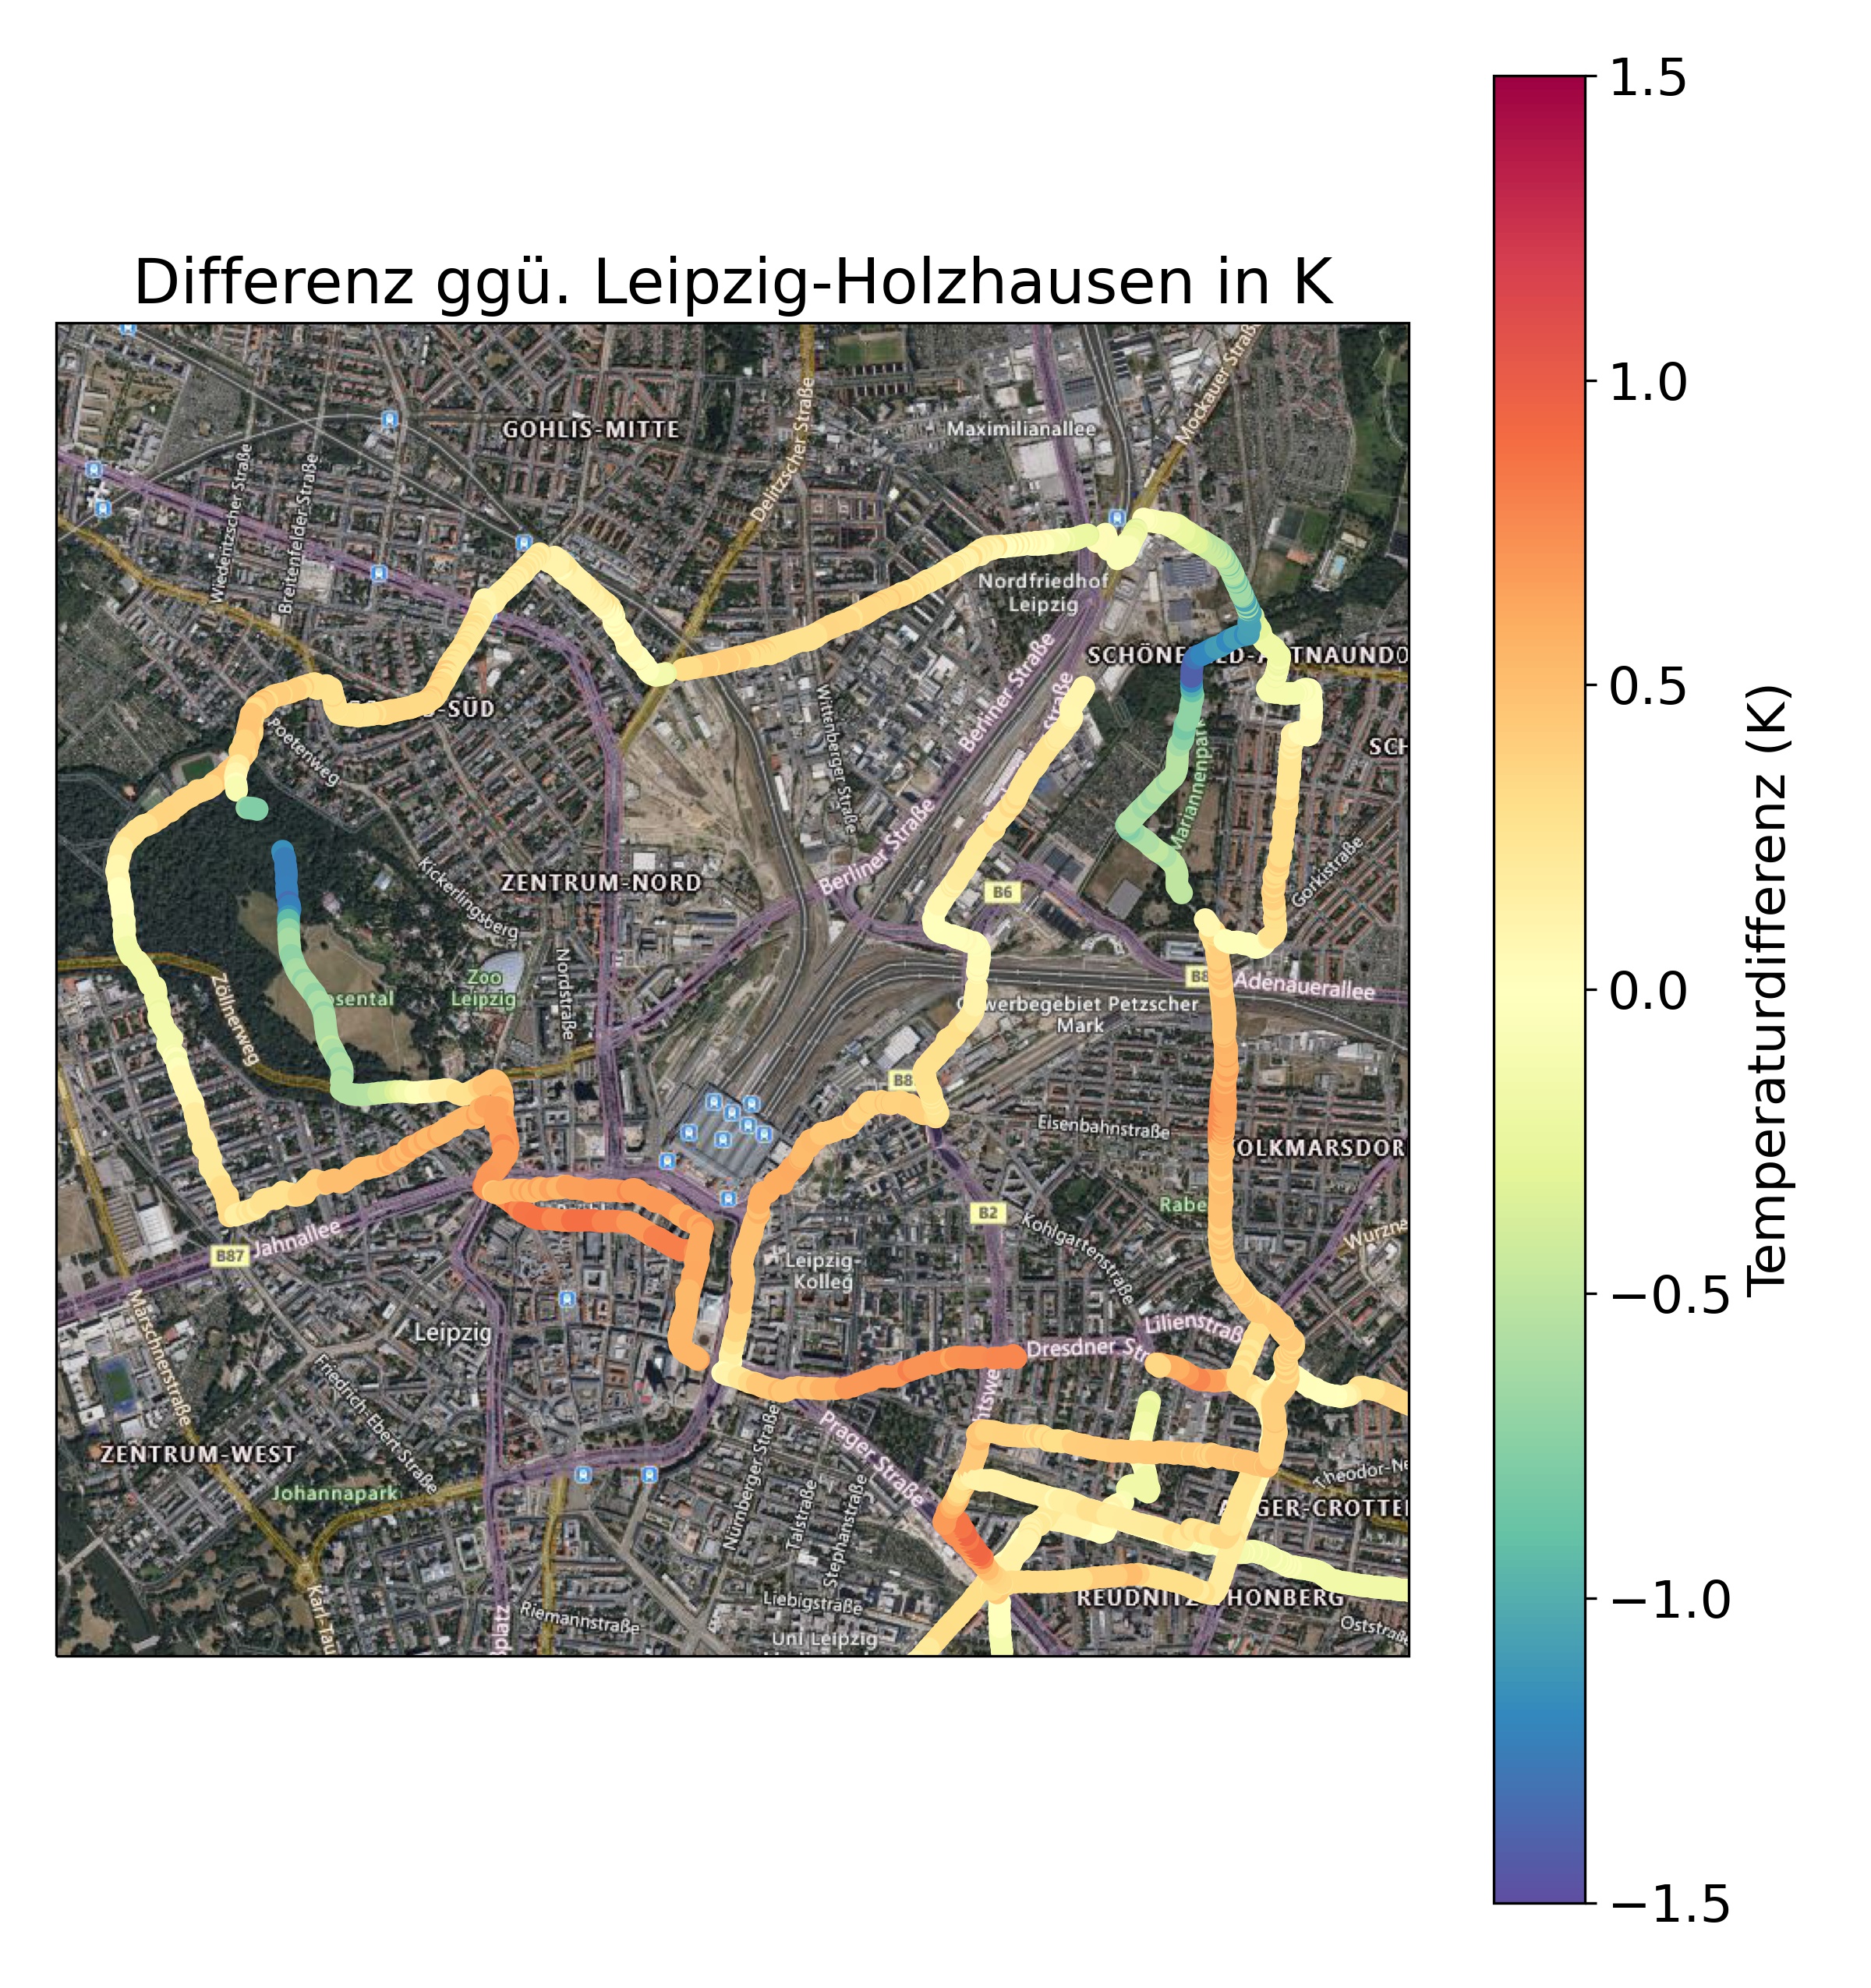 Karte von Leipzig mit Messungen mehrerer Messfahrten. Dargestellt ist die Abweichung der gemessenen Lufttemperatur von der Referenzstation Leipzig-Holzhausen.